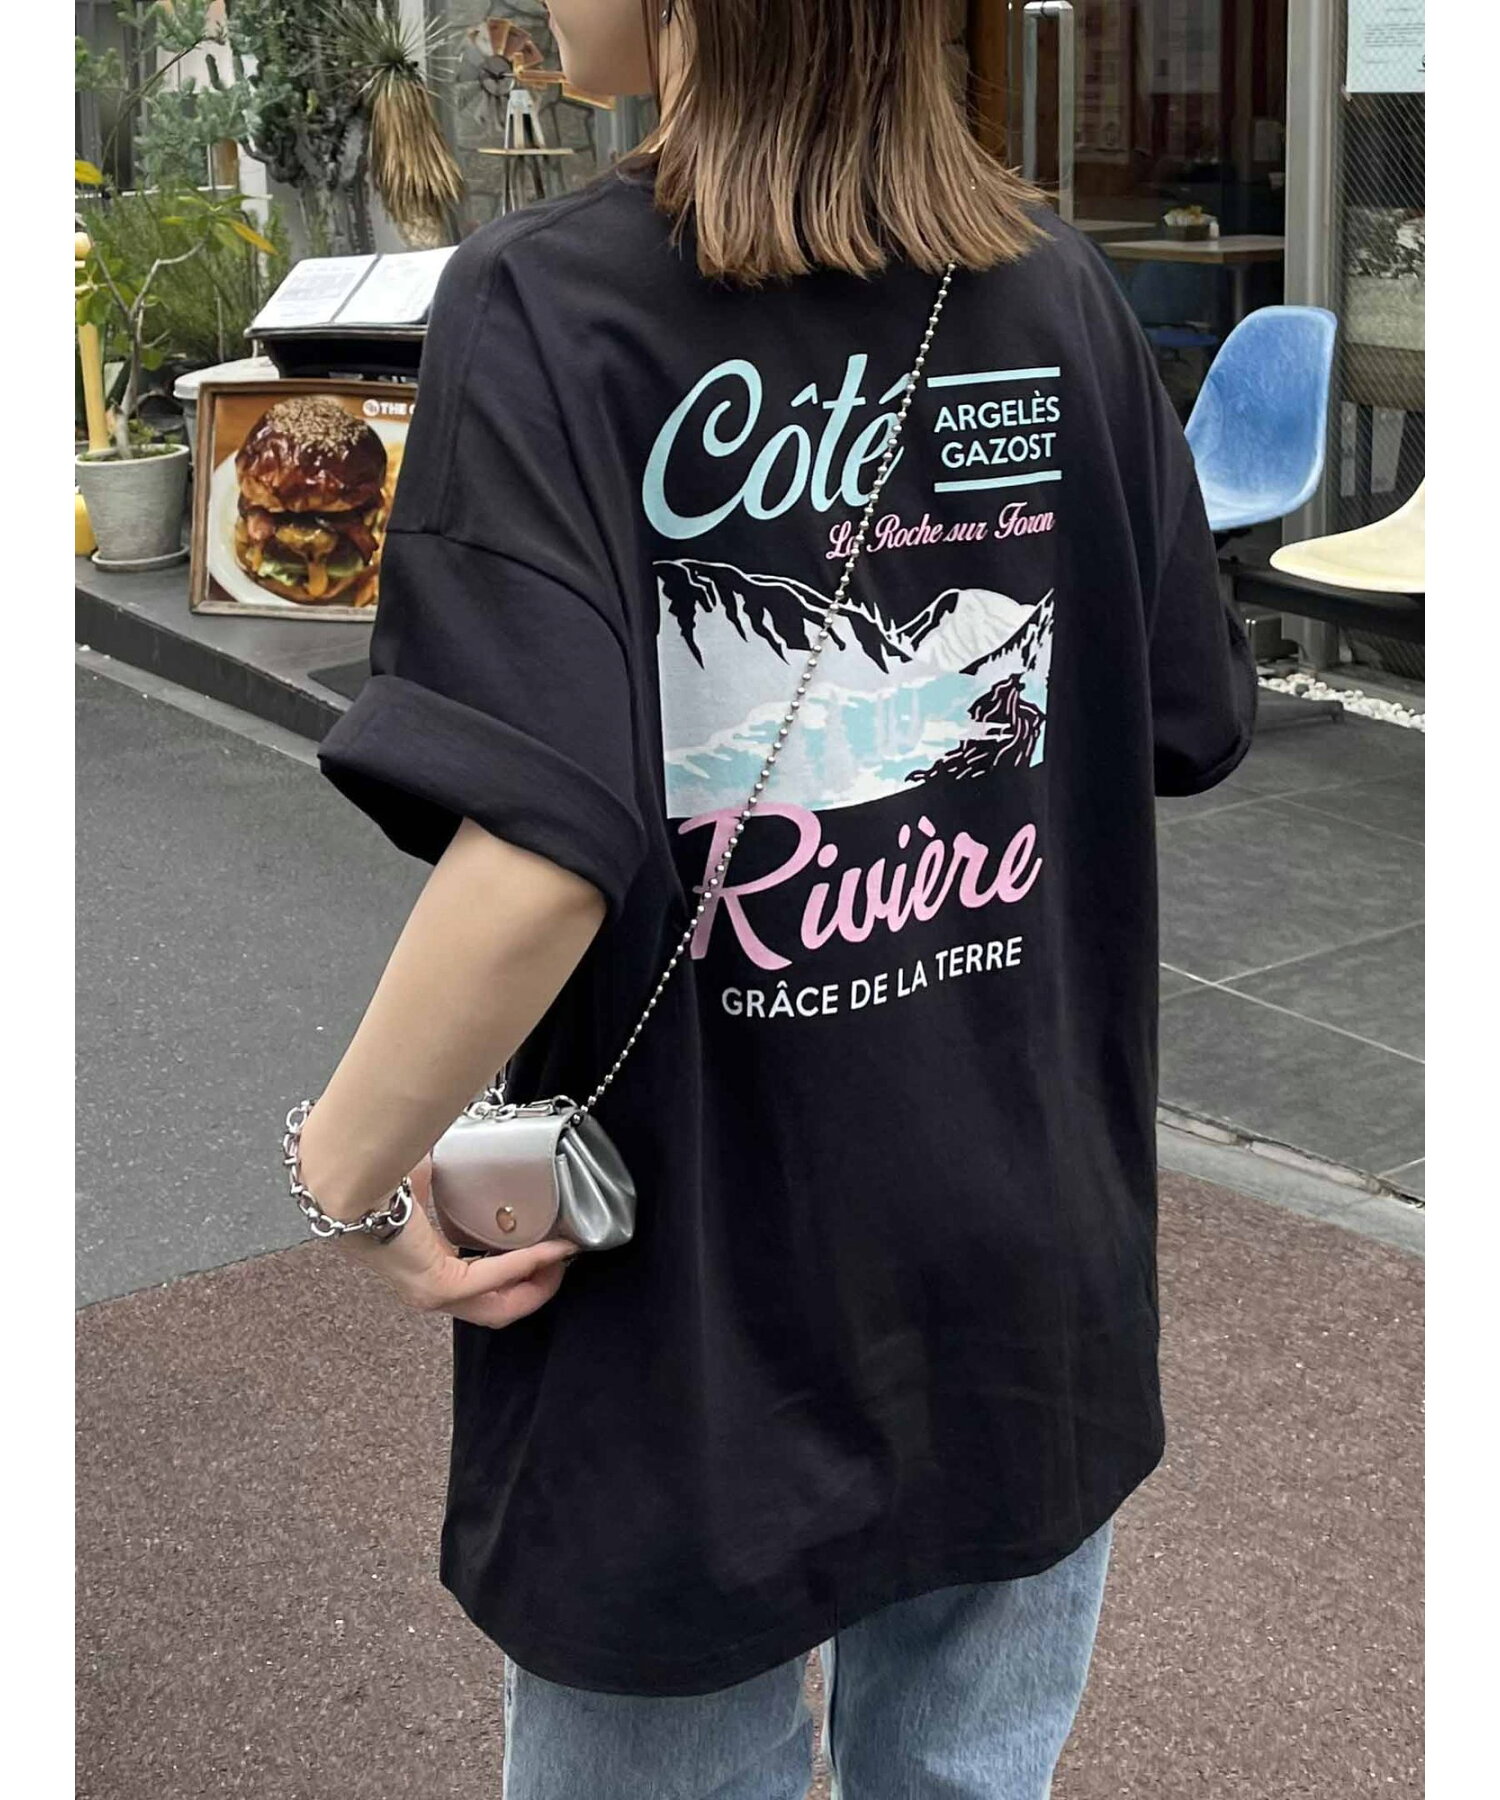 【ユニセックス】CoteスーベニアバックプリントTシャツ